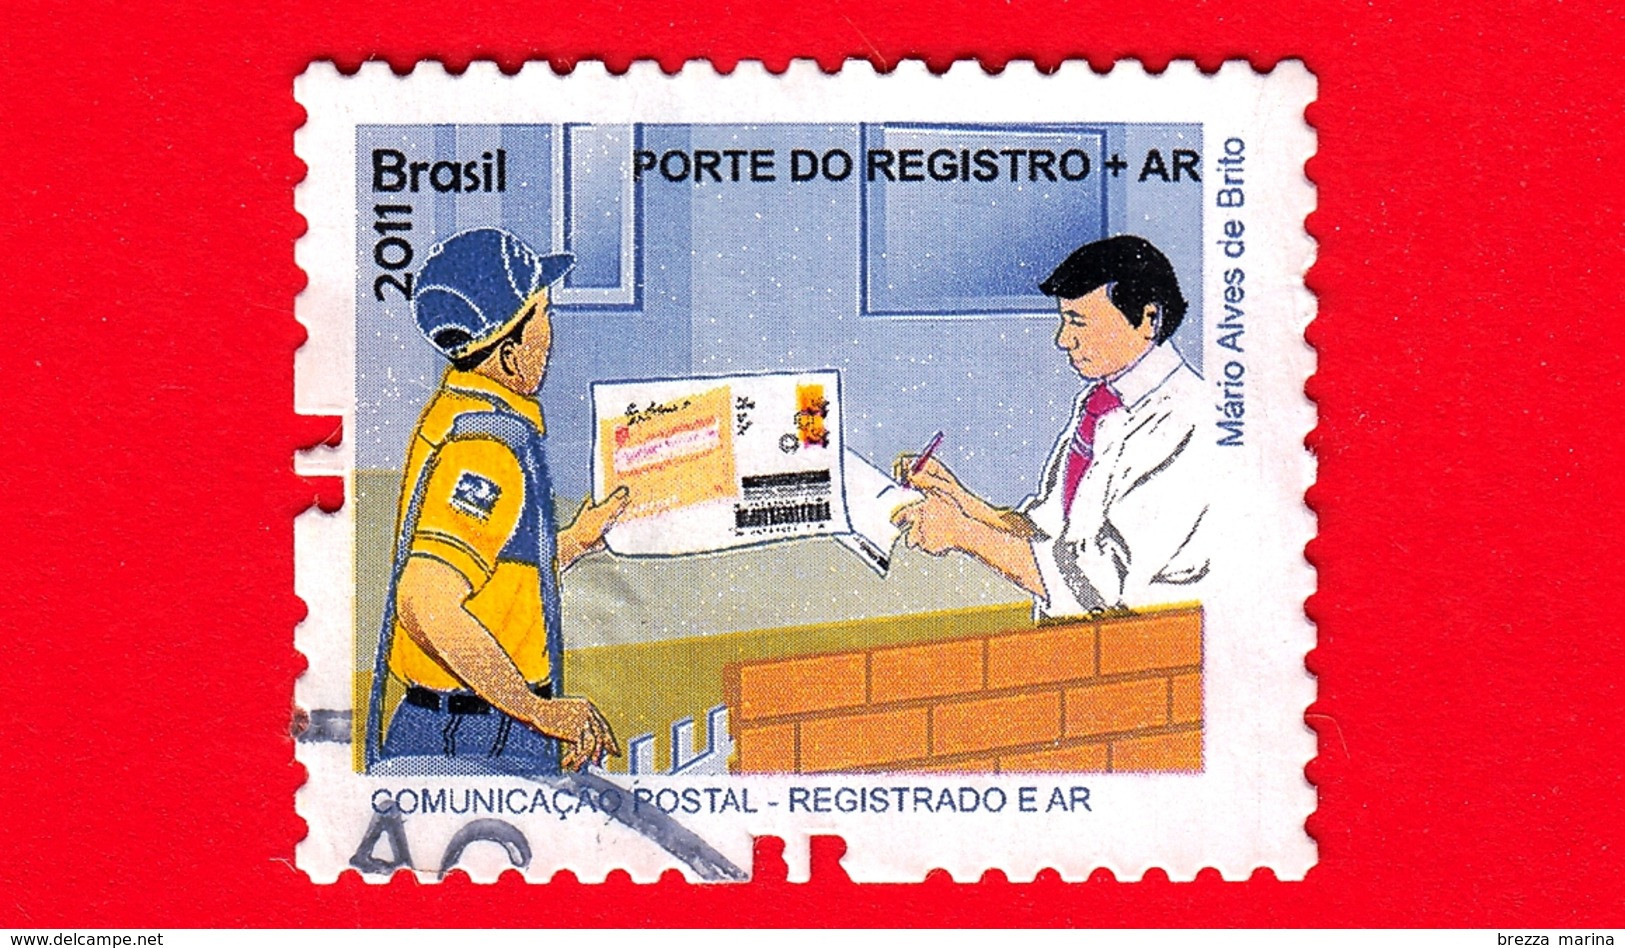 BRASILE - Usato - 2011 - Prodotti E Servizi Postali - Post Office - Porte Do Registro + AR - No Valore Facciale - Gebruikt